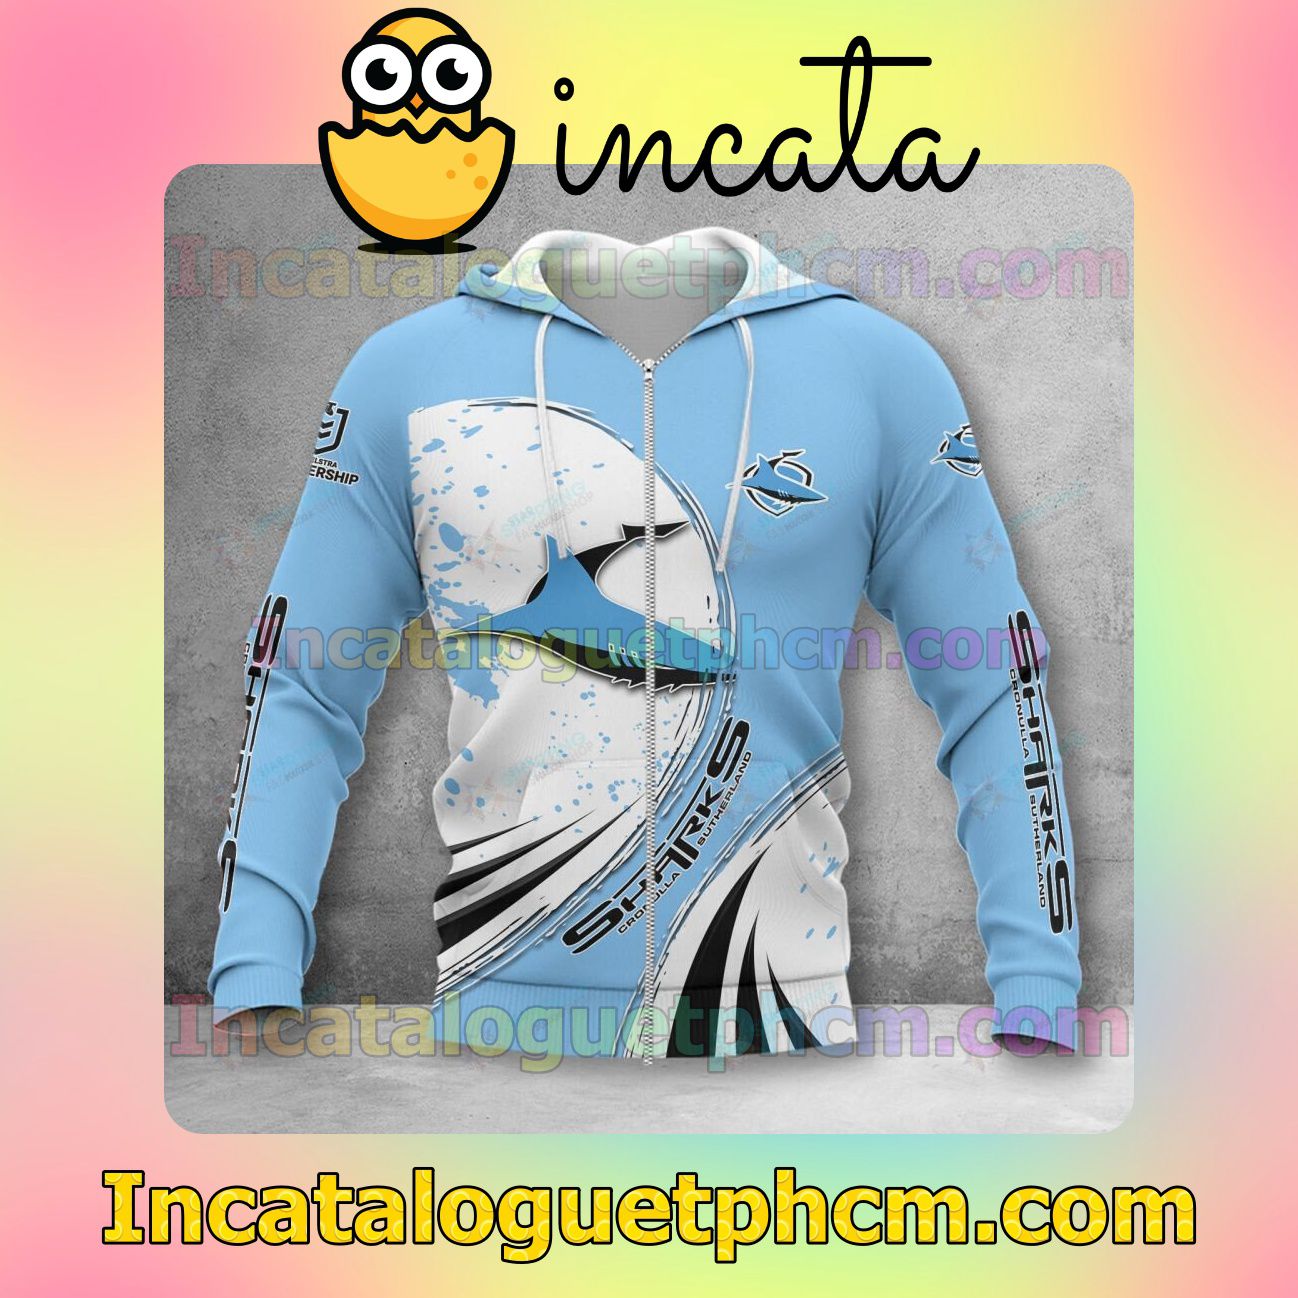 Discount Cronulla Sharks 3D Hoodie, Hawaiian Shirt